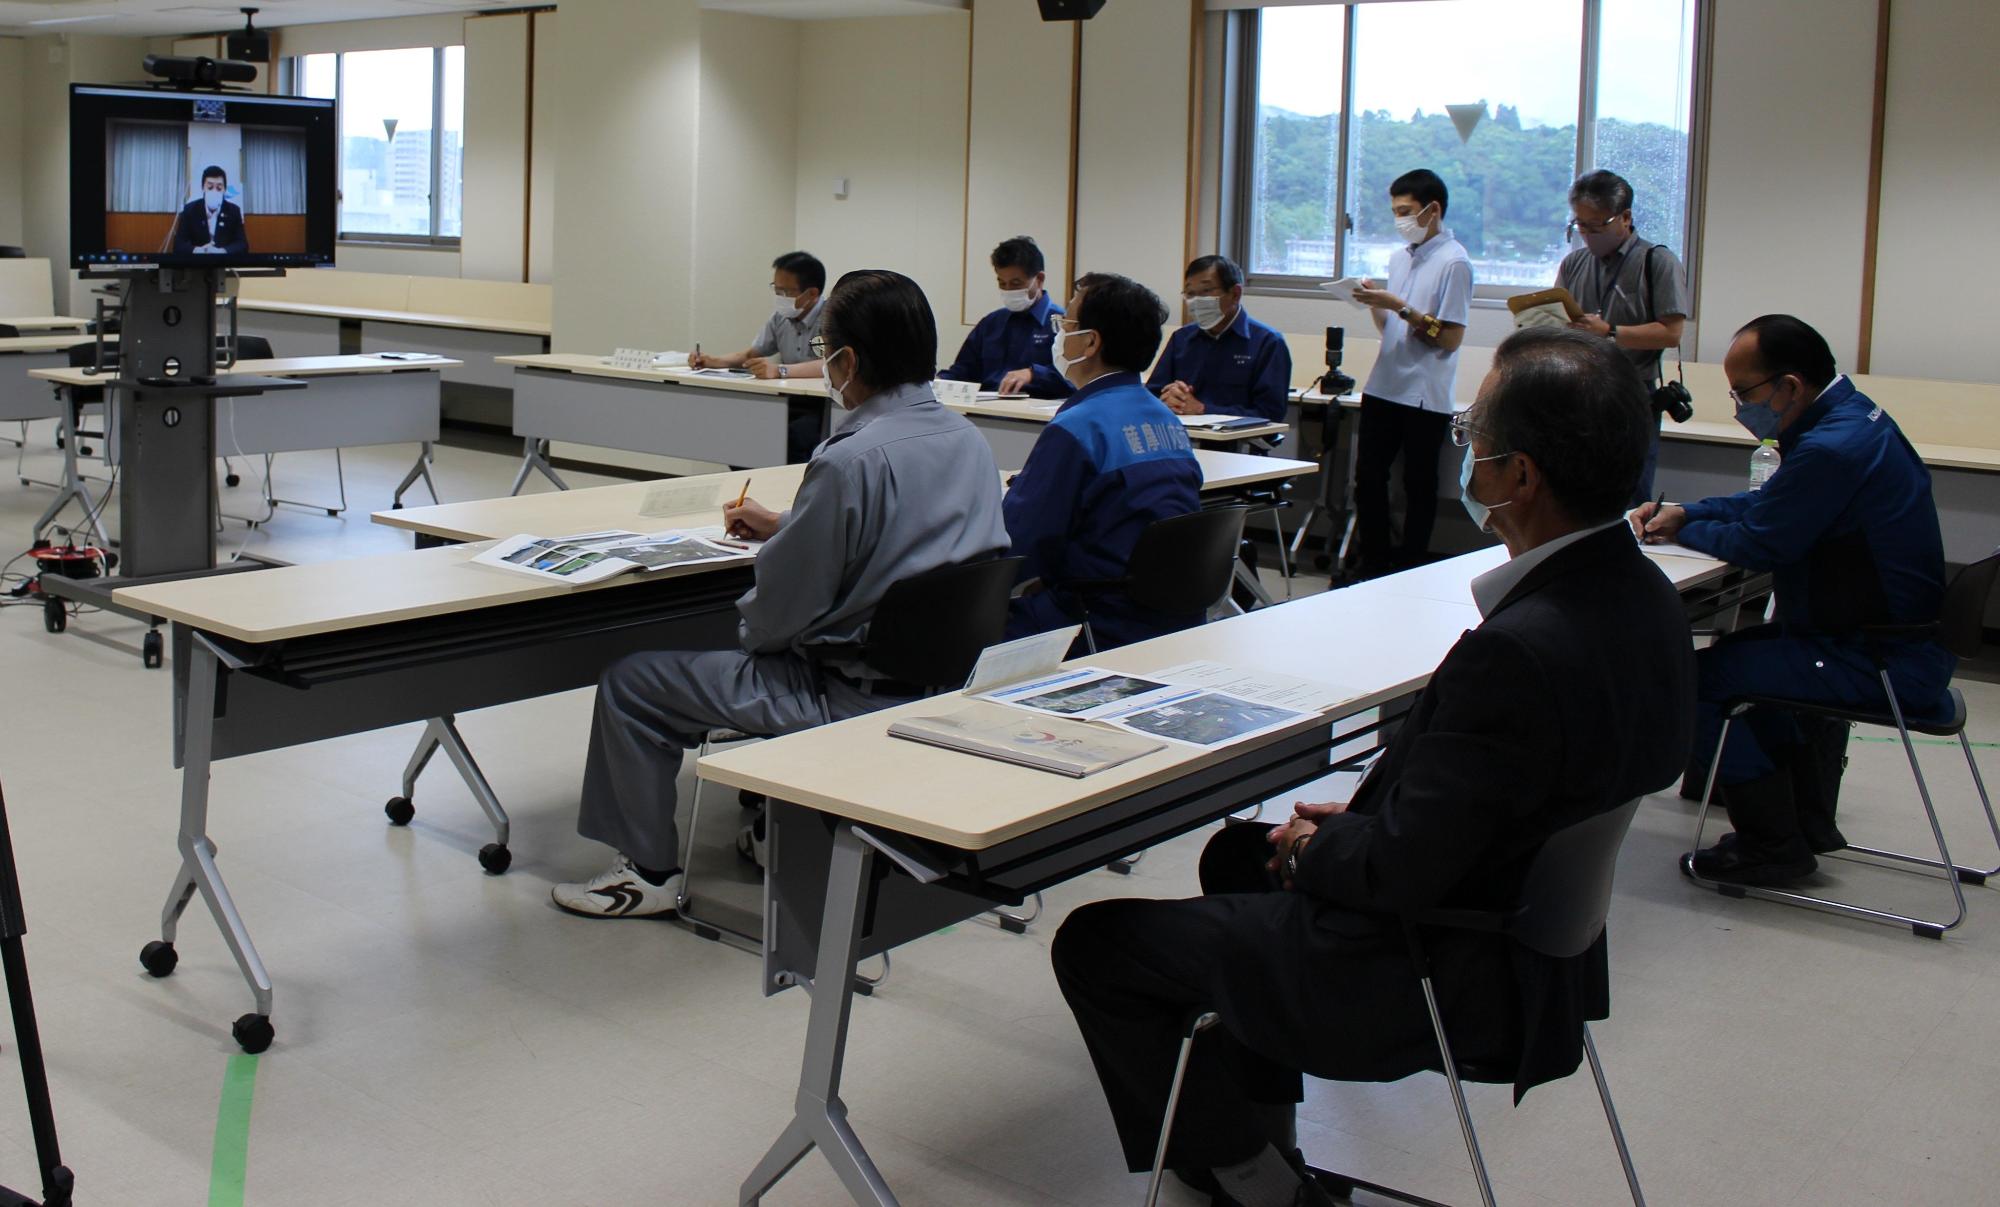 会議室でモニターに映っている鹿児島県知事と、メモを取るなどして話を聞く薩摩川内市職員の方々の写真